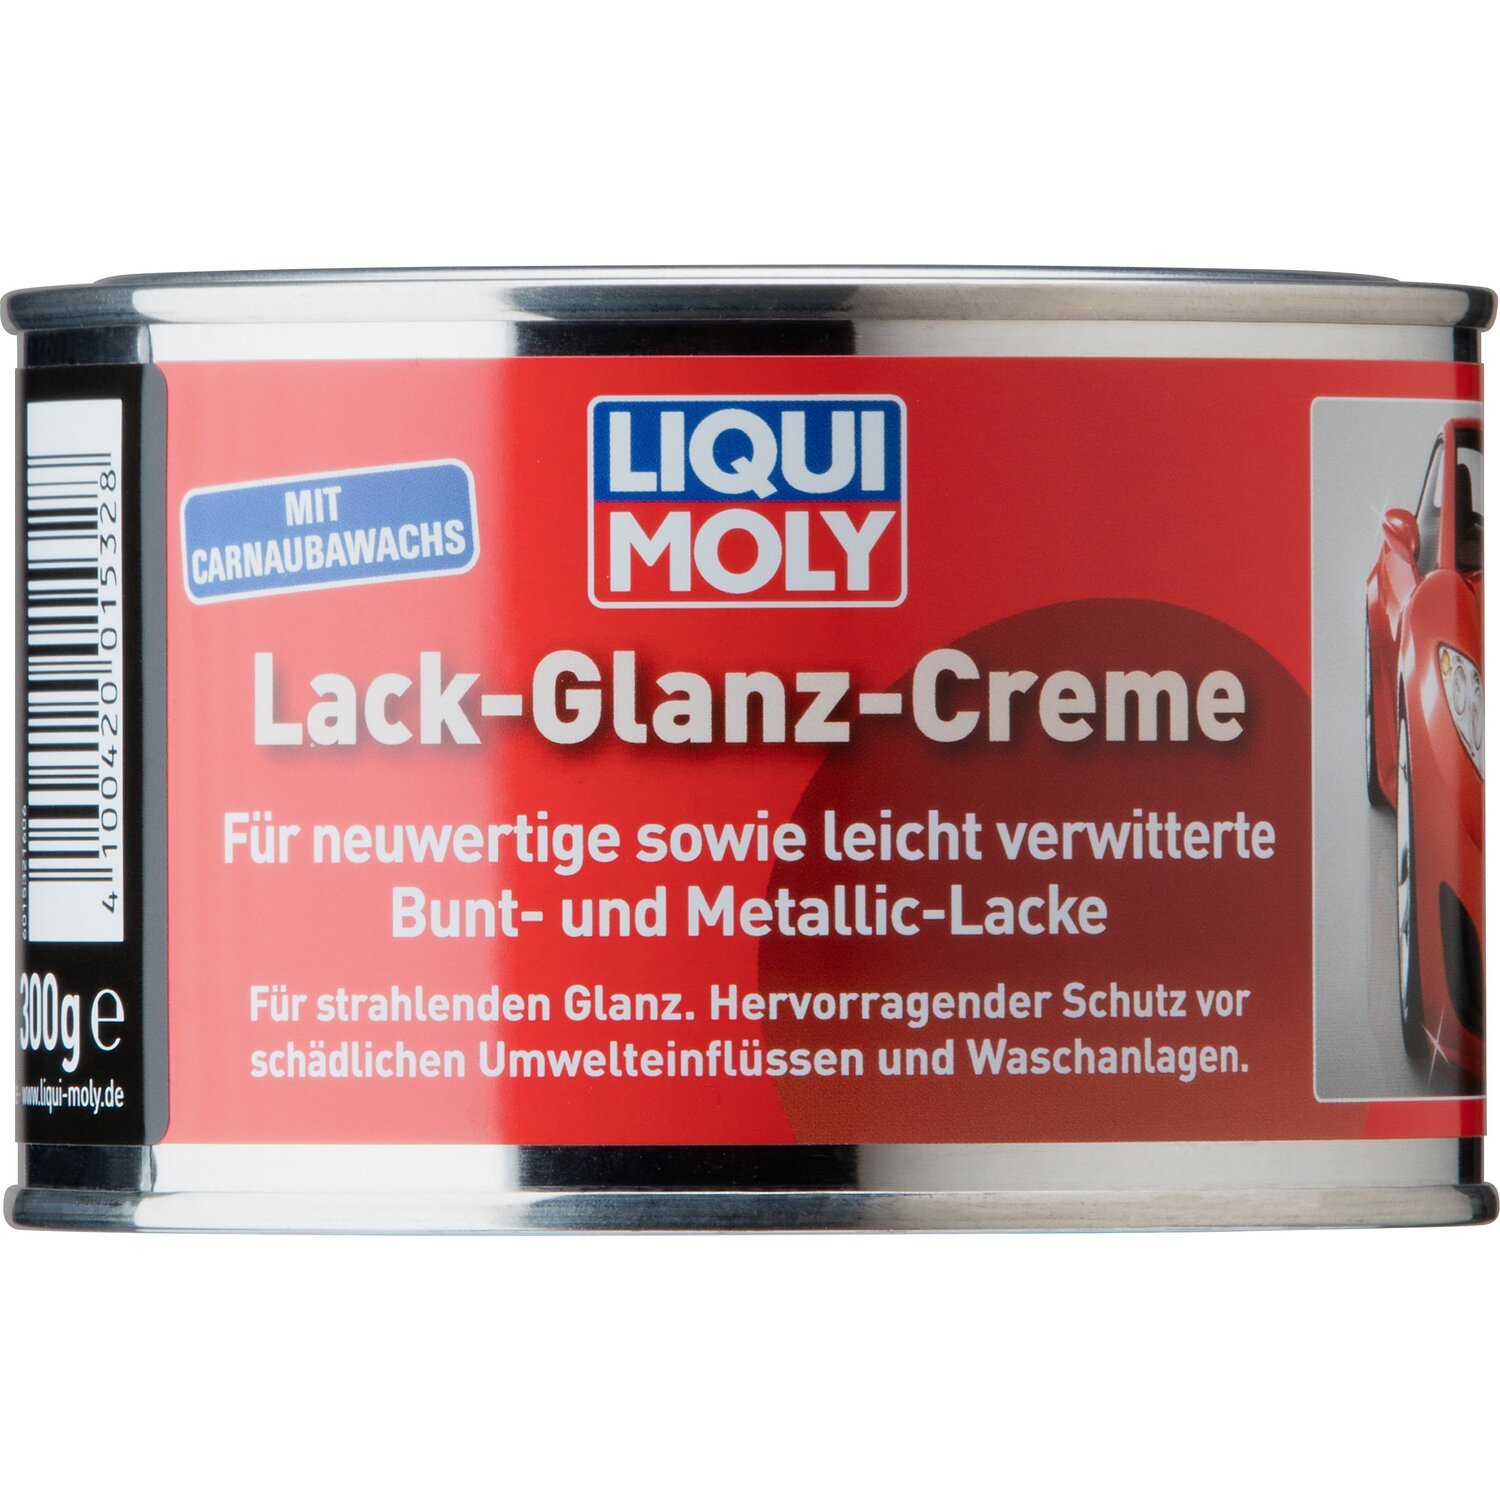 Поліроль Liqui Moly для лакових емалей Lack-Glanz-Creme 0,3кг (4100420015328)фото